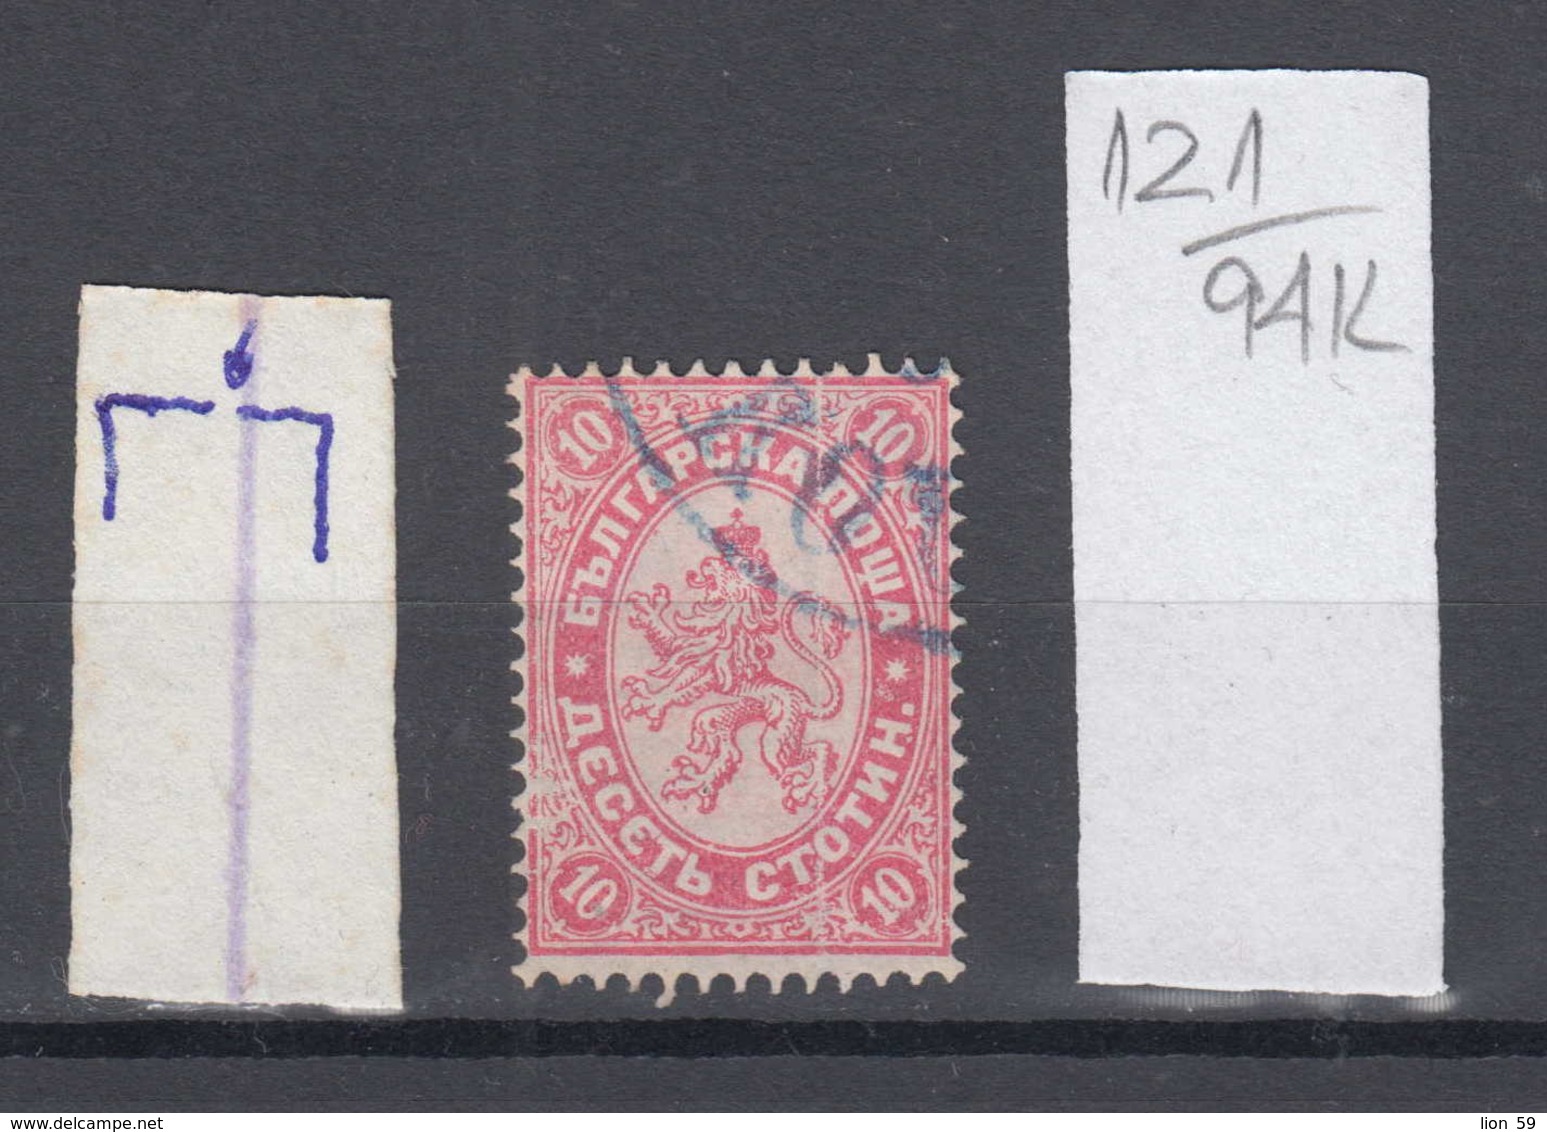 94K121 / ERROR 1882 - Michel Nr. 16  Used ( O ) - 10 St. ,Wz1 - Freimarken , Big Lion , Bulgaria Bulgarie - Abarten Und Kuriositäten